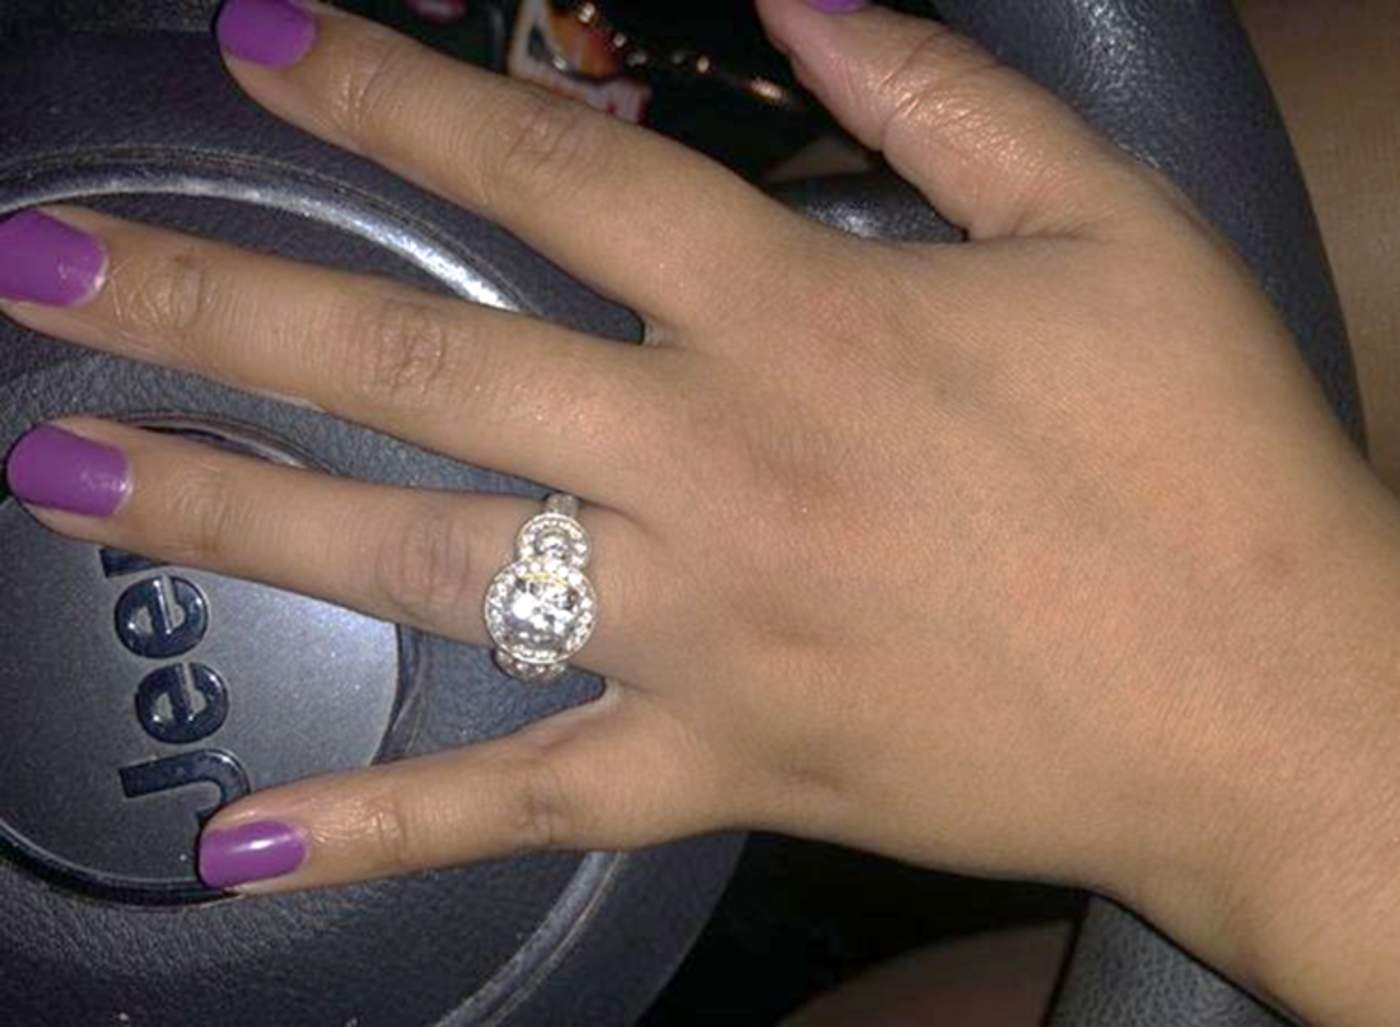 La mujer se queja tanto del anillo como de la forma como se llevó a cabo la propuesta de matrimonio. (INTERNET)